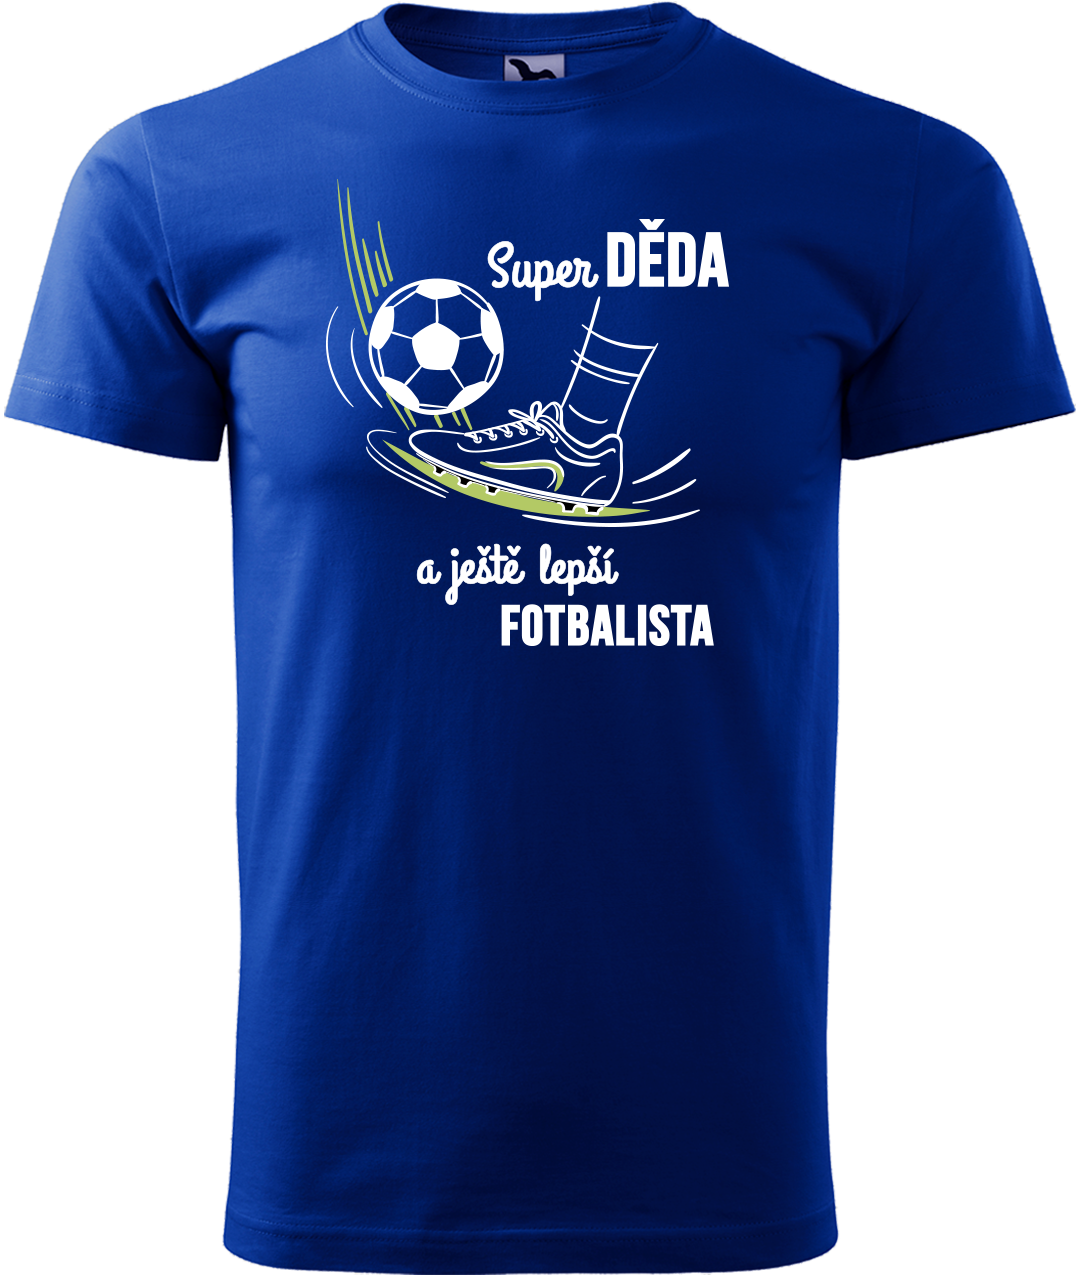 Tričko pro fotbalistu - Super děda a ještě lepší fotbalista Velikost: L, Barva: Královská modrá (05)